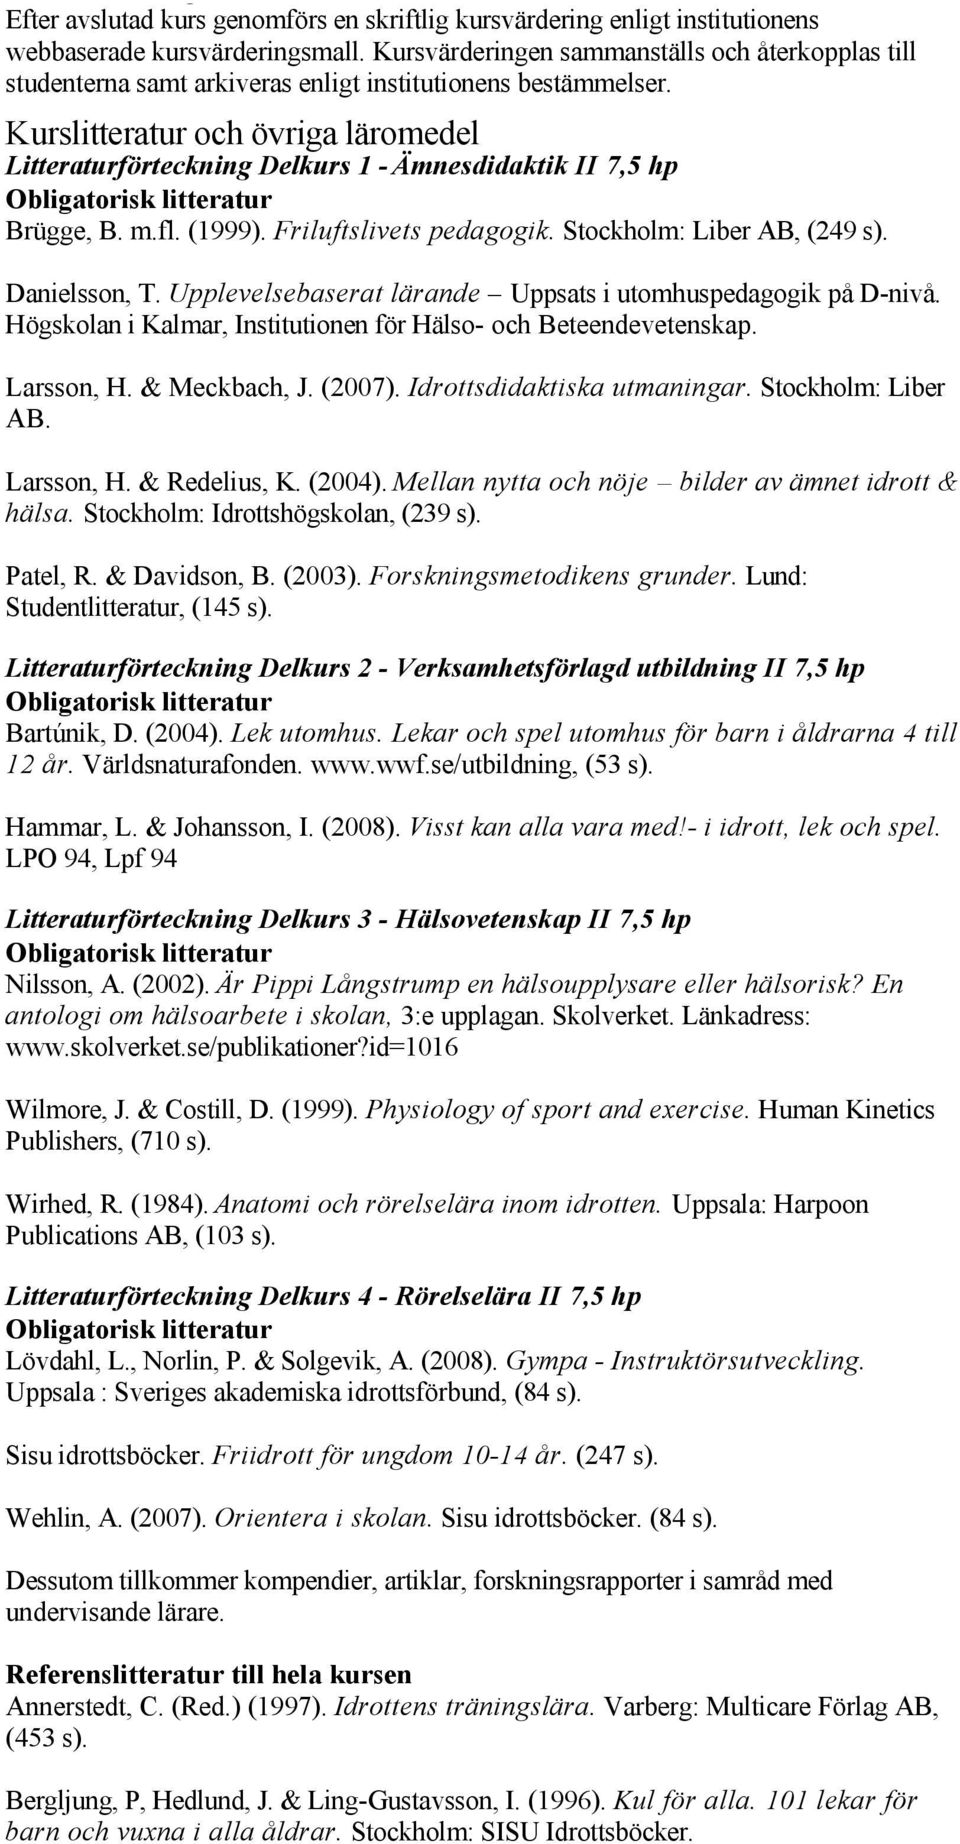 Kurslitteratur och övriga läromedel Litteraturförteckning Delkurs 1 Ämnesdidaktik II 7,5 hp Brügge, B. m.fl. (1999). Friluftslivets pedagogik. Stockholm: Liber AB, (249 s). Danielsson, T.